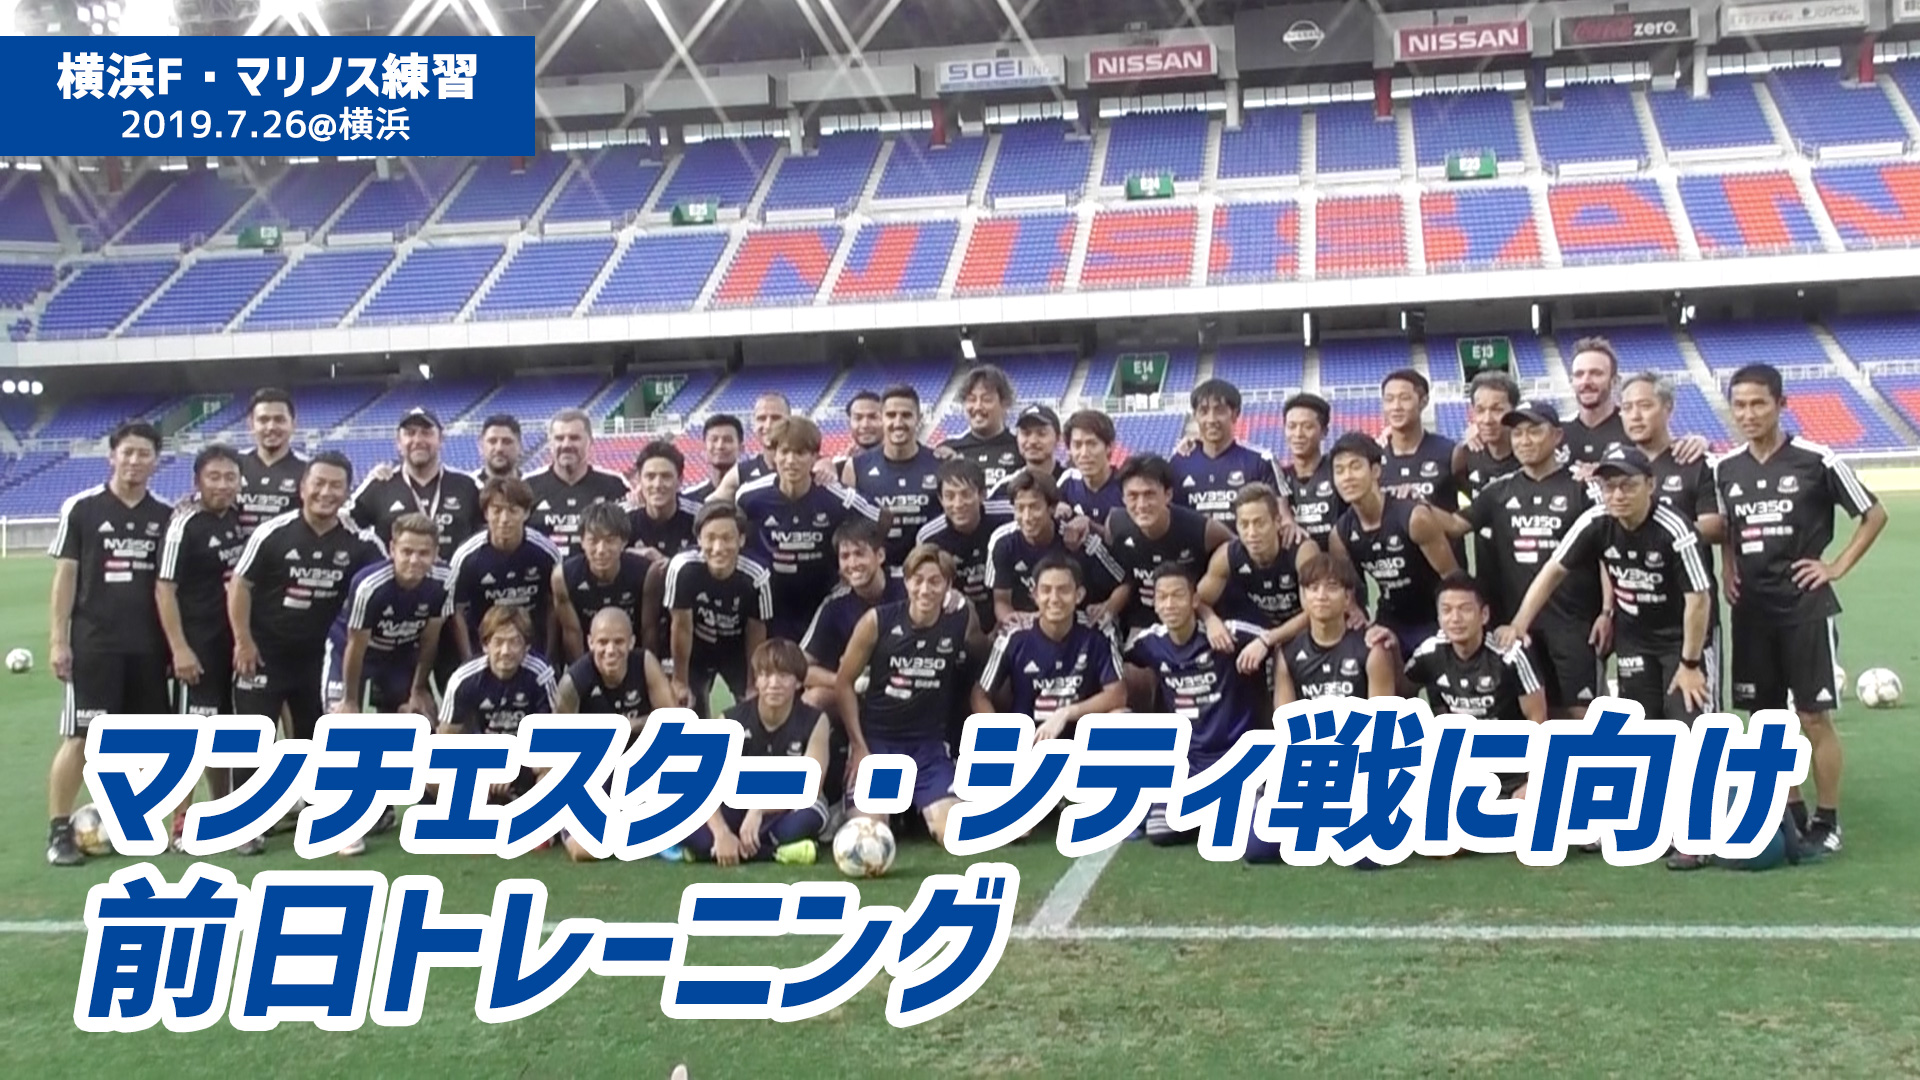 動画 7 26 横浜f マリノスがマンチェスター シティ戦に向けてトレーニング スポーツナビ 超worldサッカー